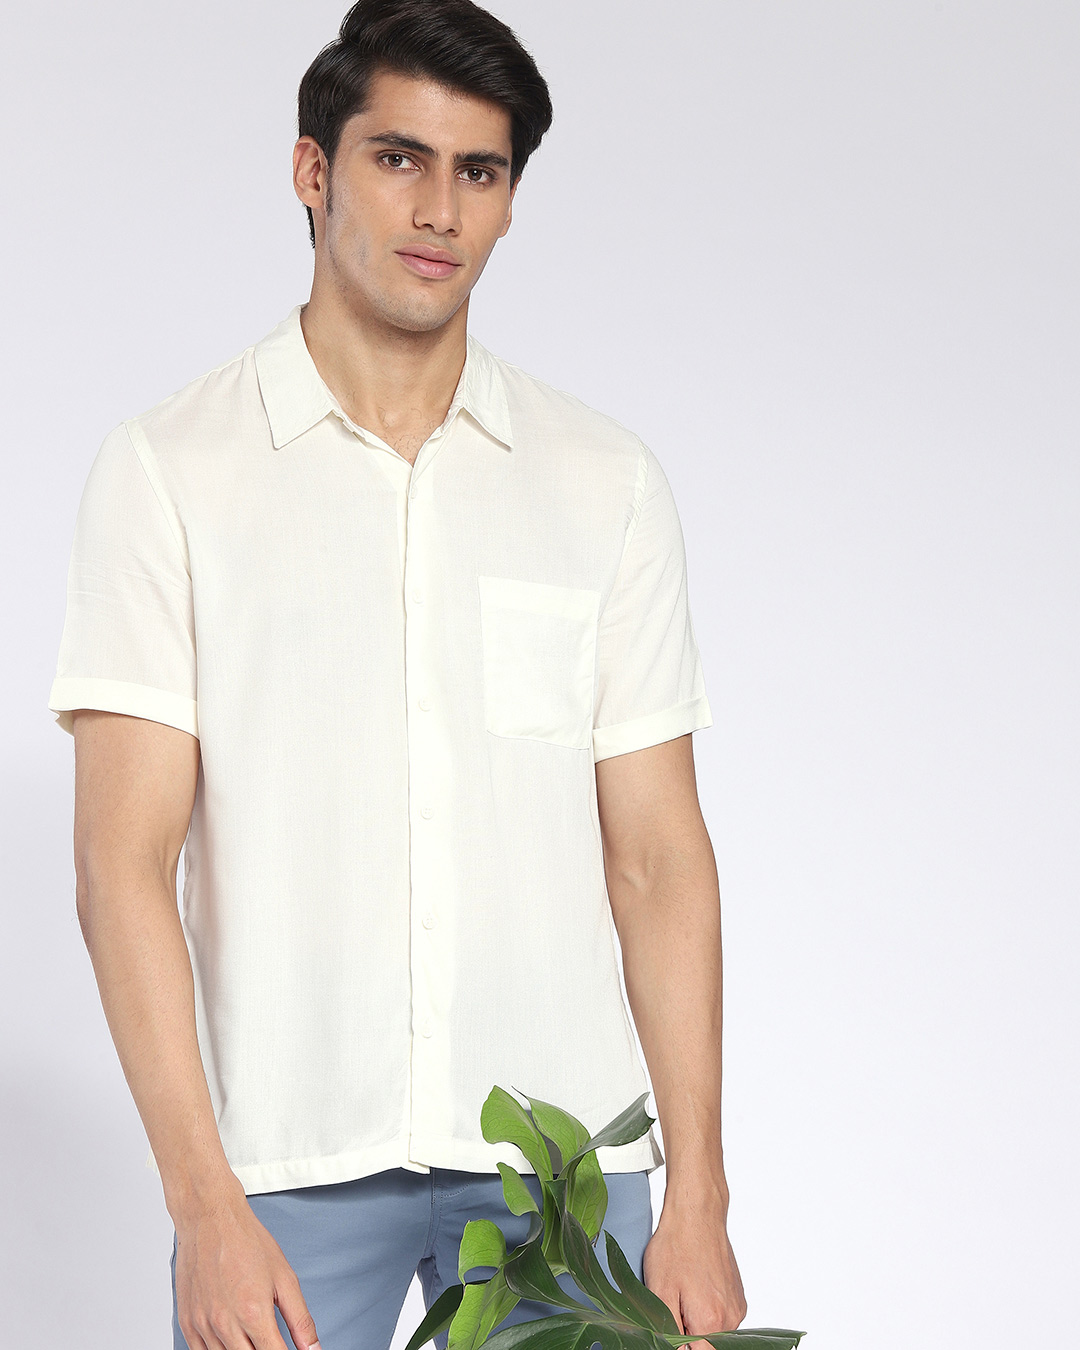 Buy Men's Cream Shirt Online at Bewakoof